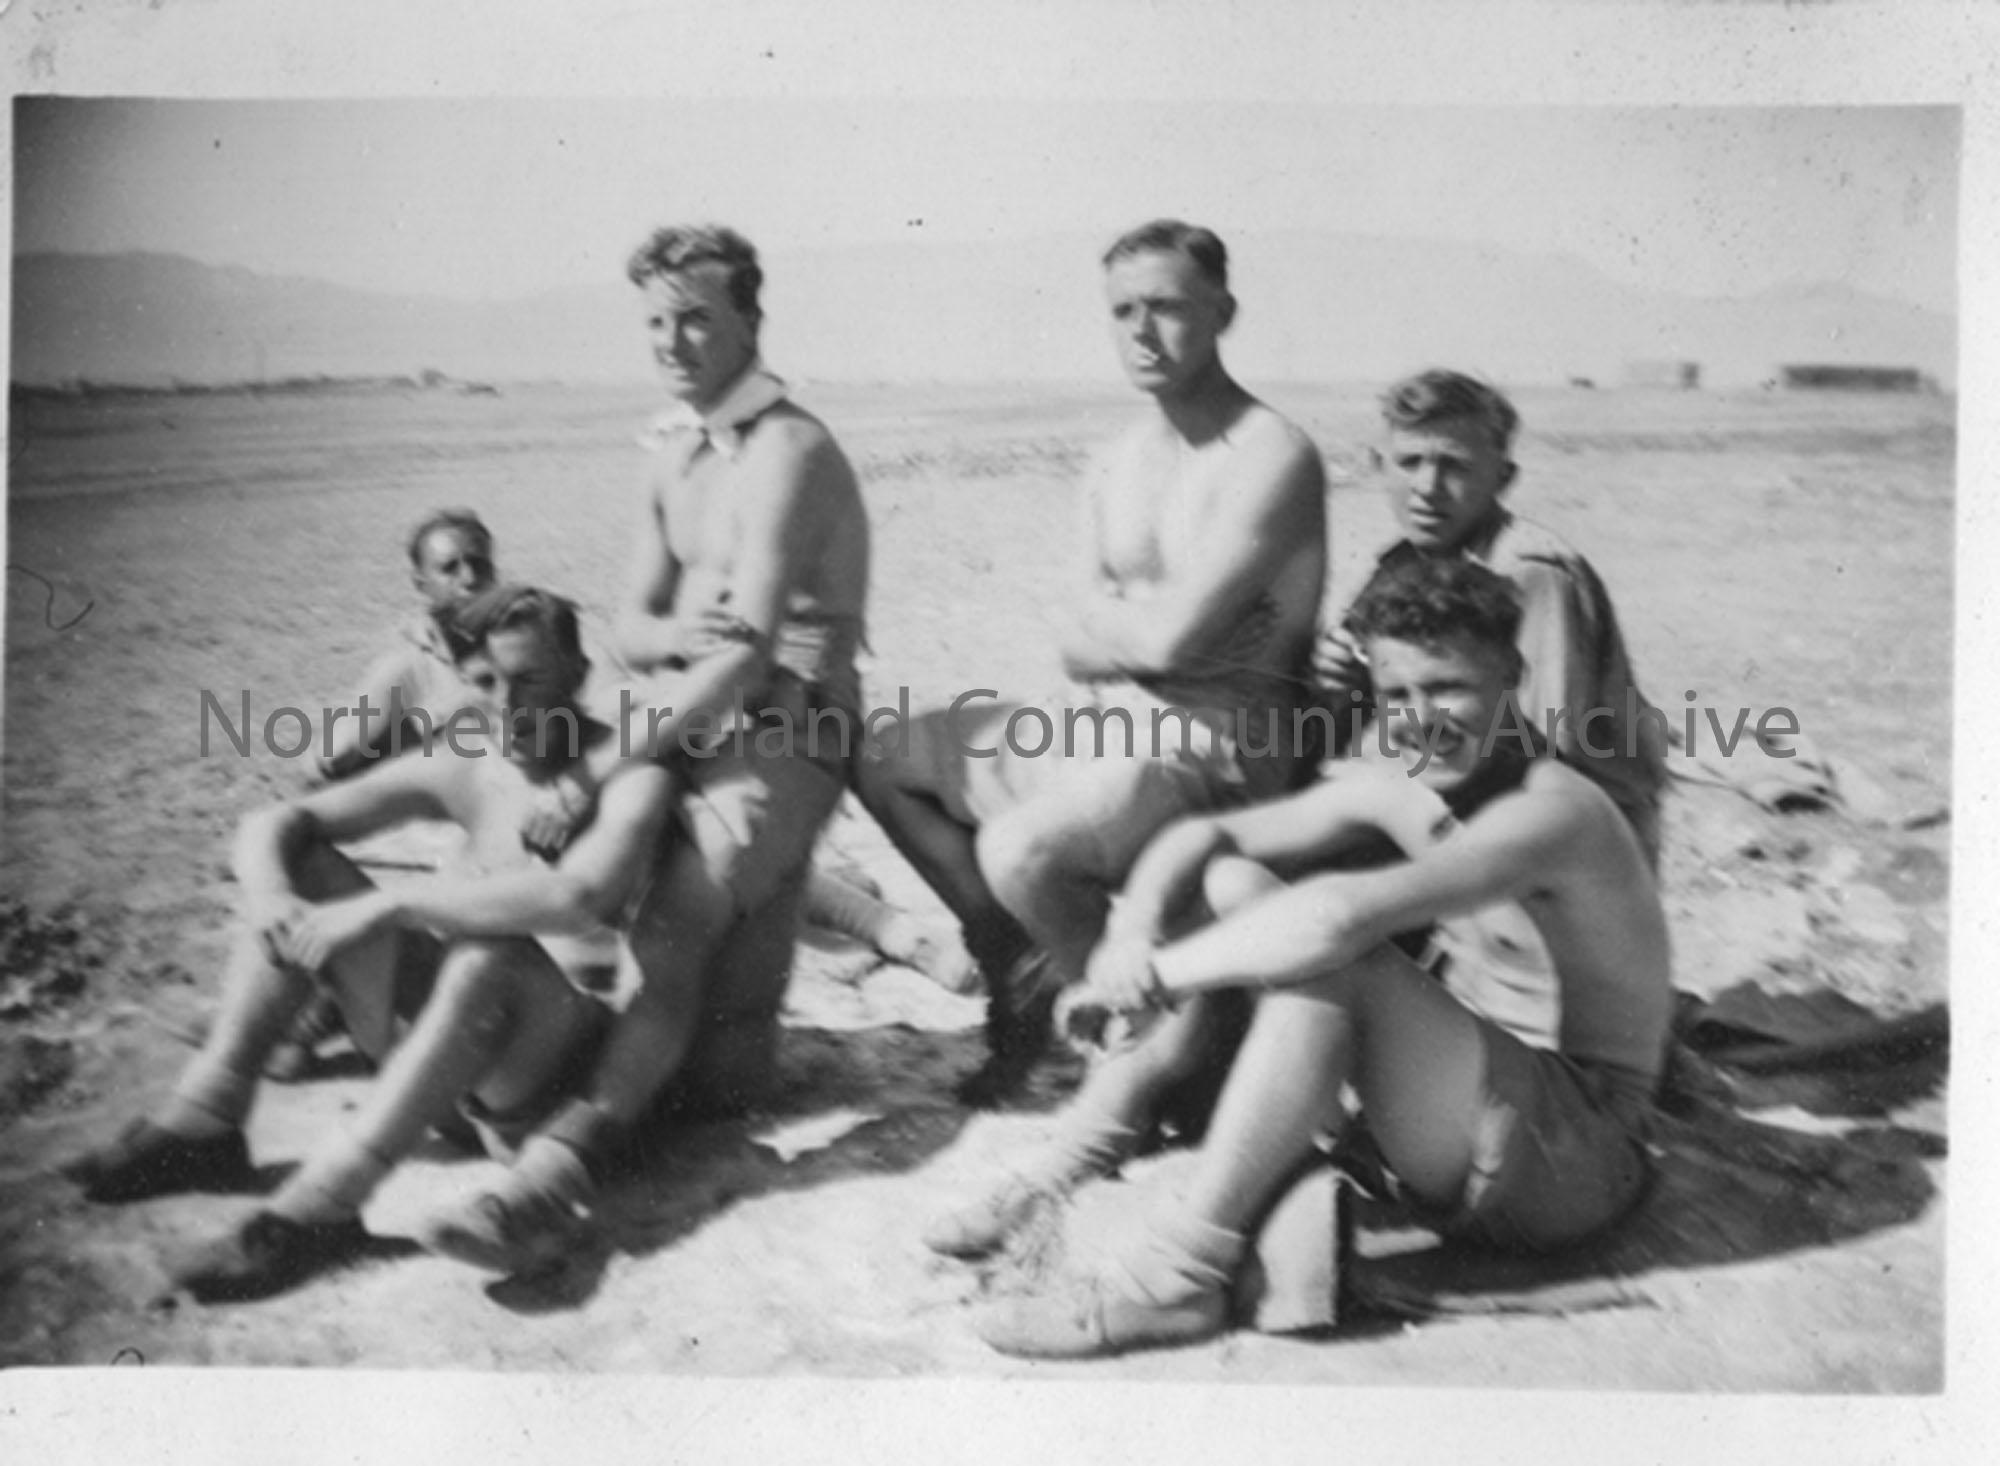 Group of Gunners in the desert